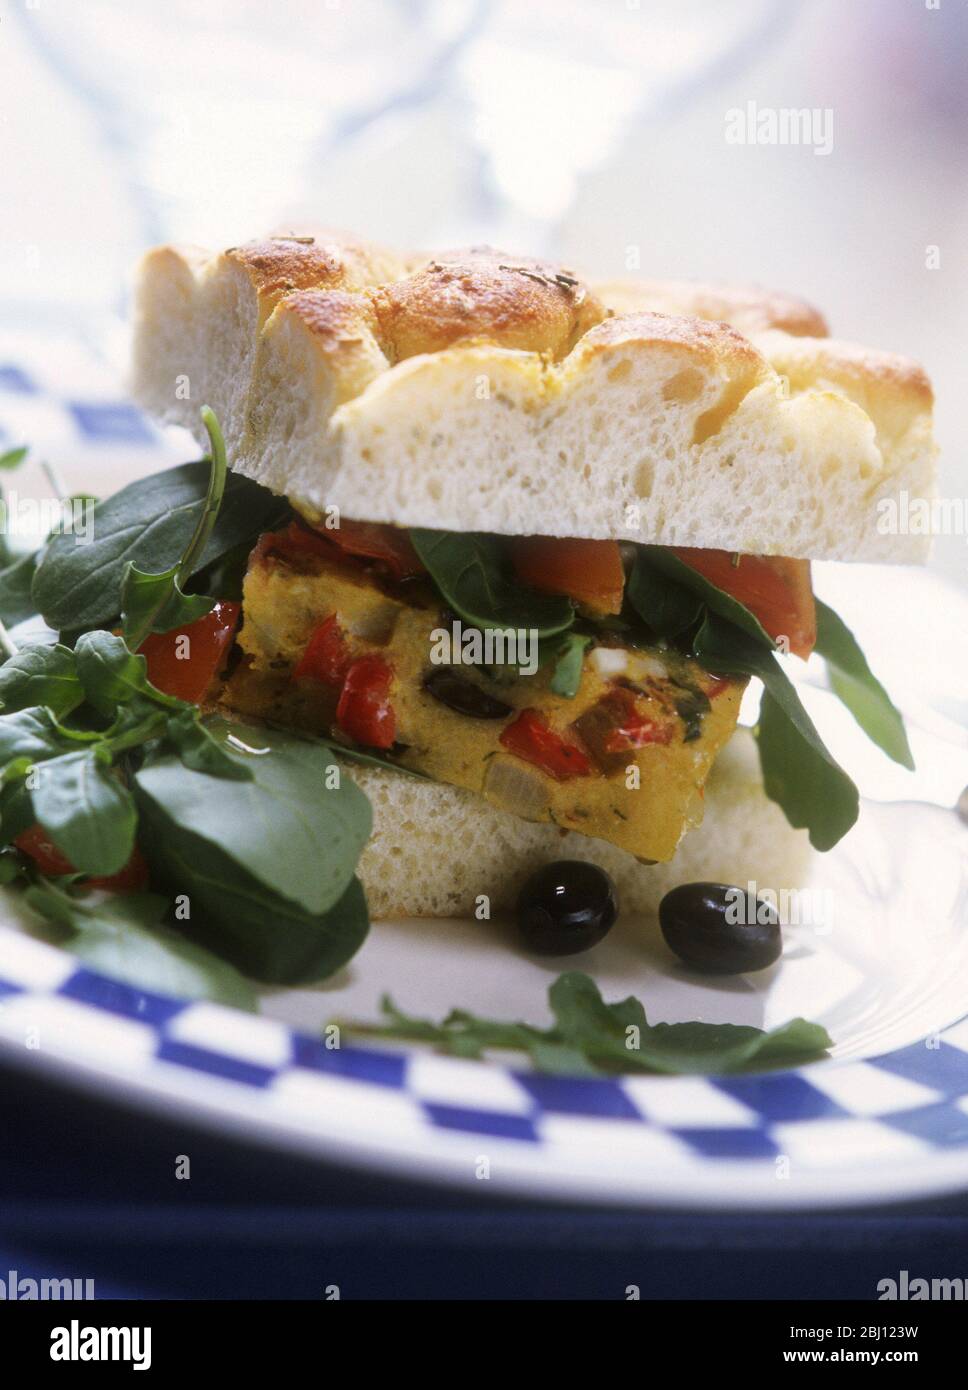 Sandwich von spanischen Omelette (Frittata) in Foccacia-Brot mit Rucola-Salat und schwarzen Oliven - Stockfoto